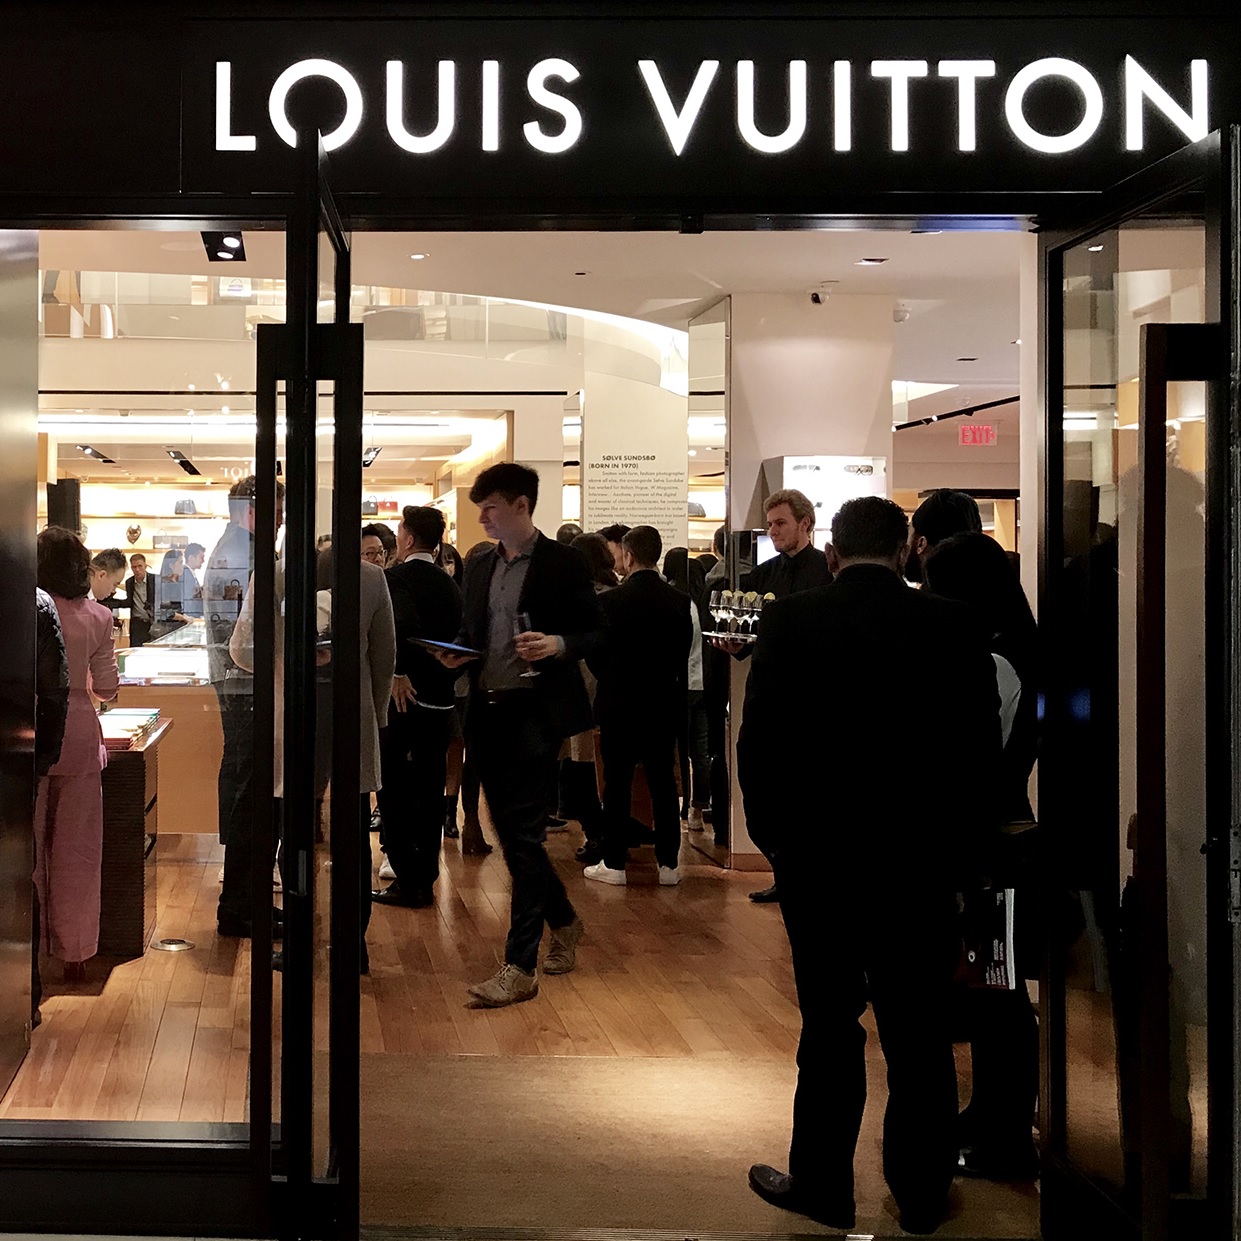 Louis Vuitton Clienteling & Events Specialist – LAS JOBAS® | Fabulous Jobs Only